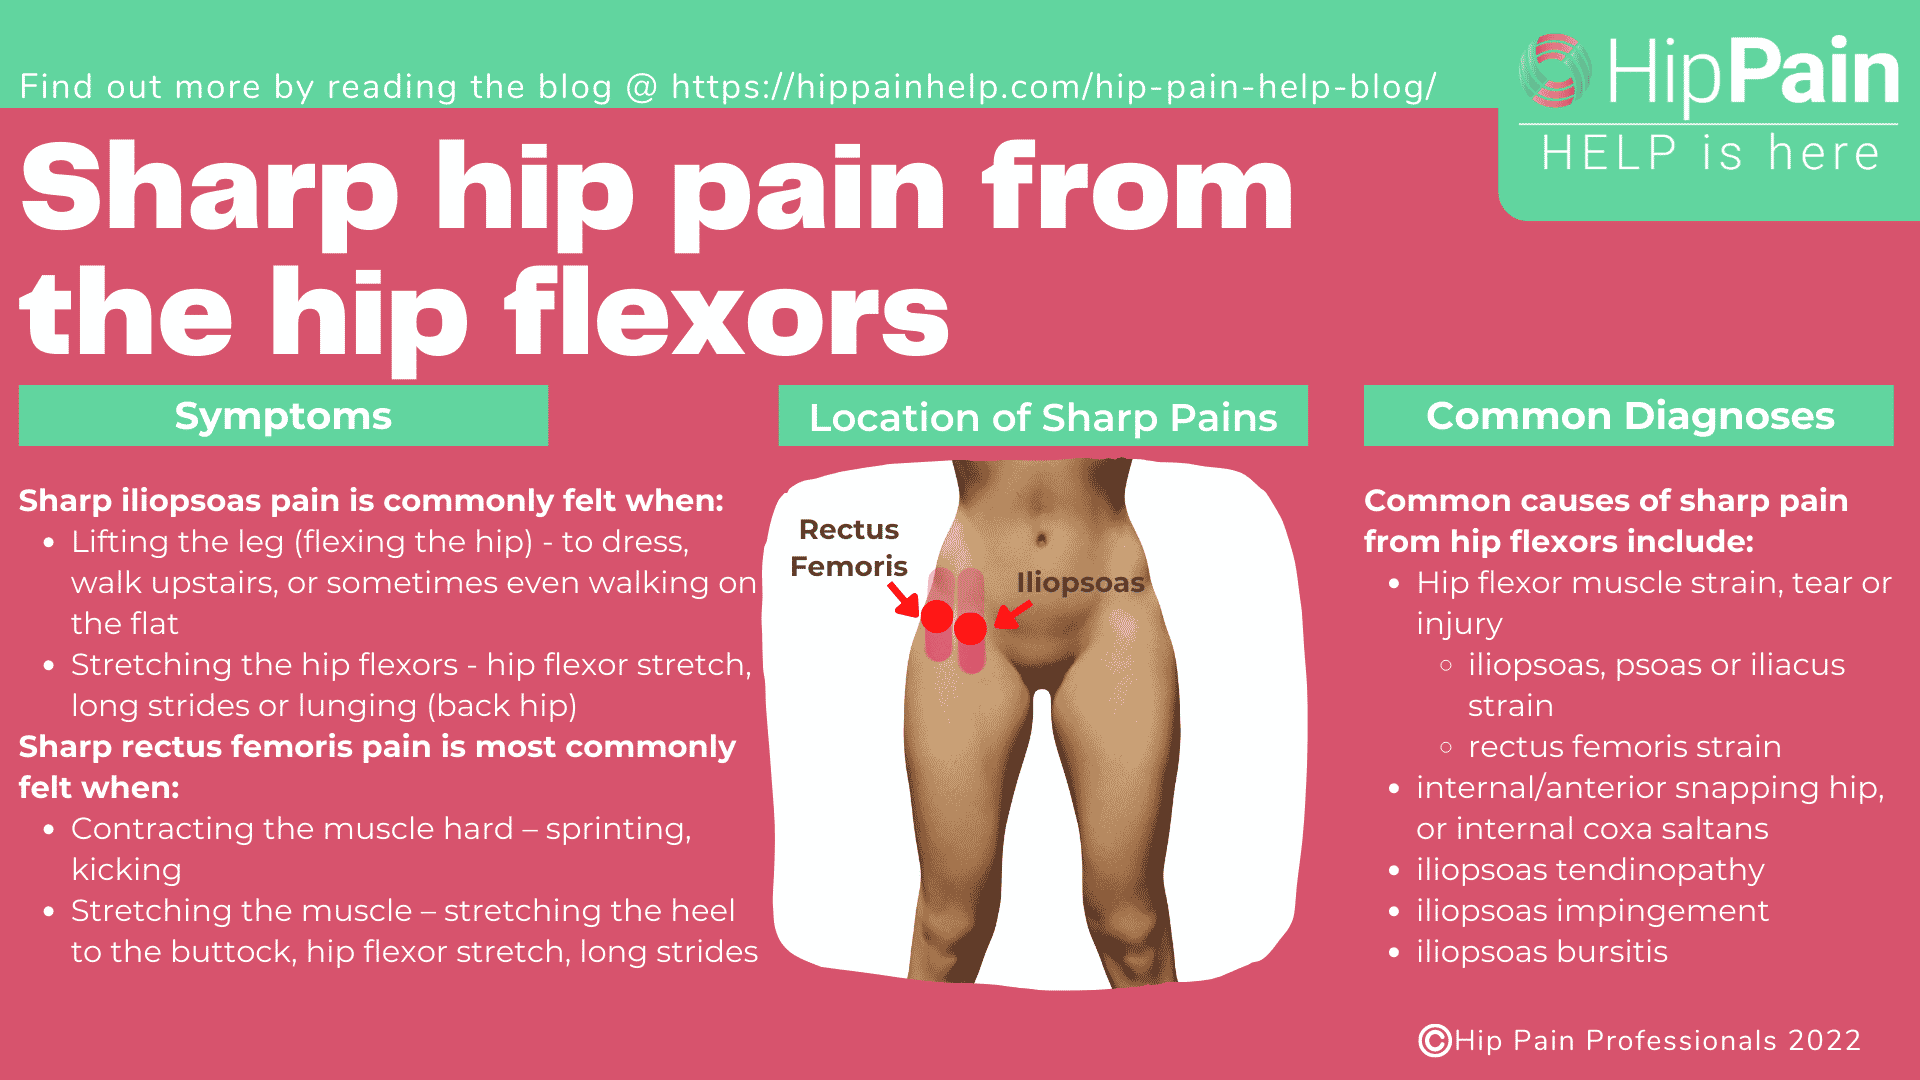 Sharp hip pain from the hip flexors